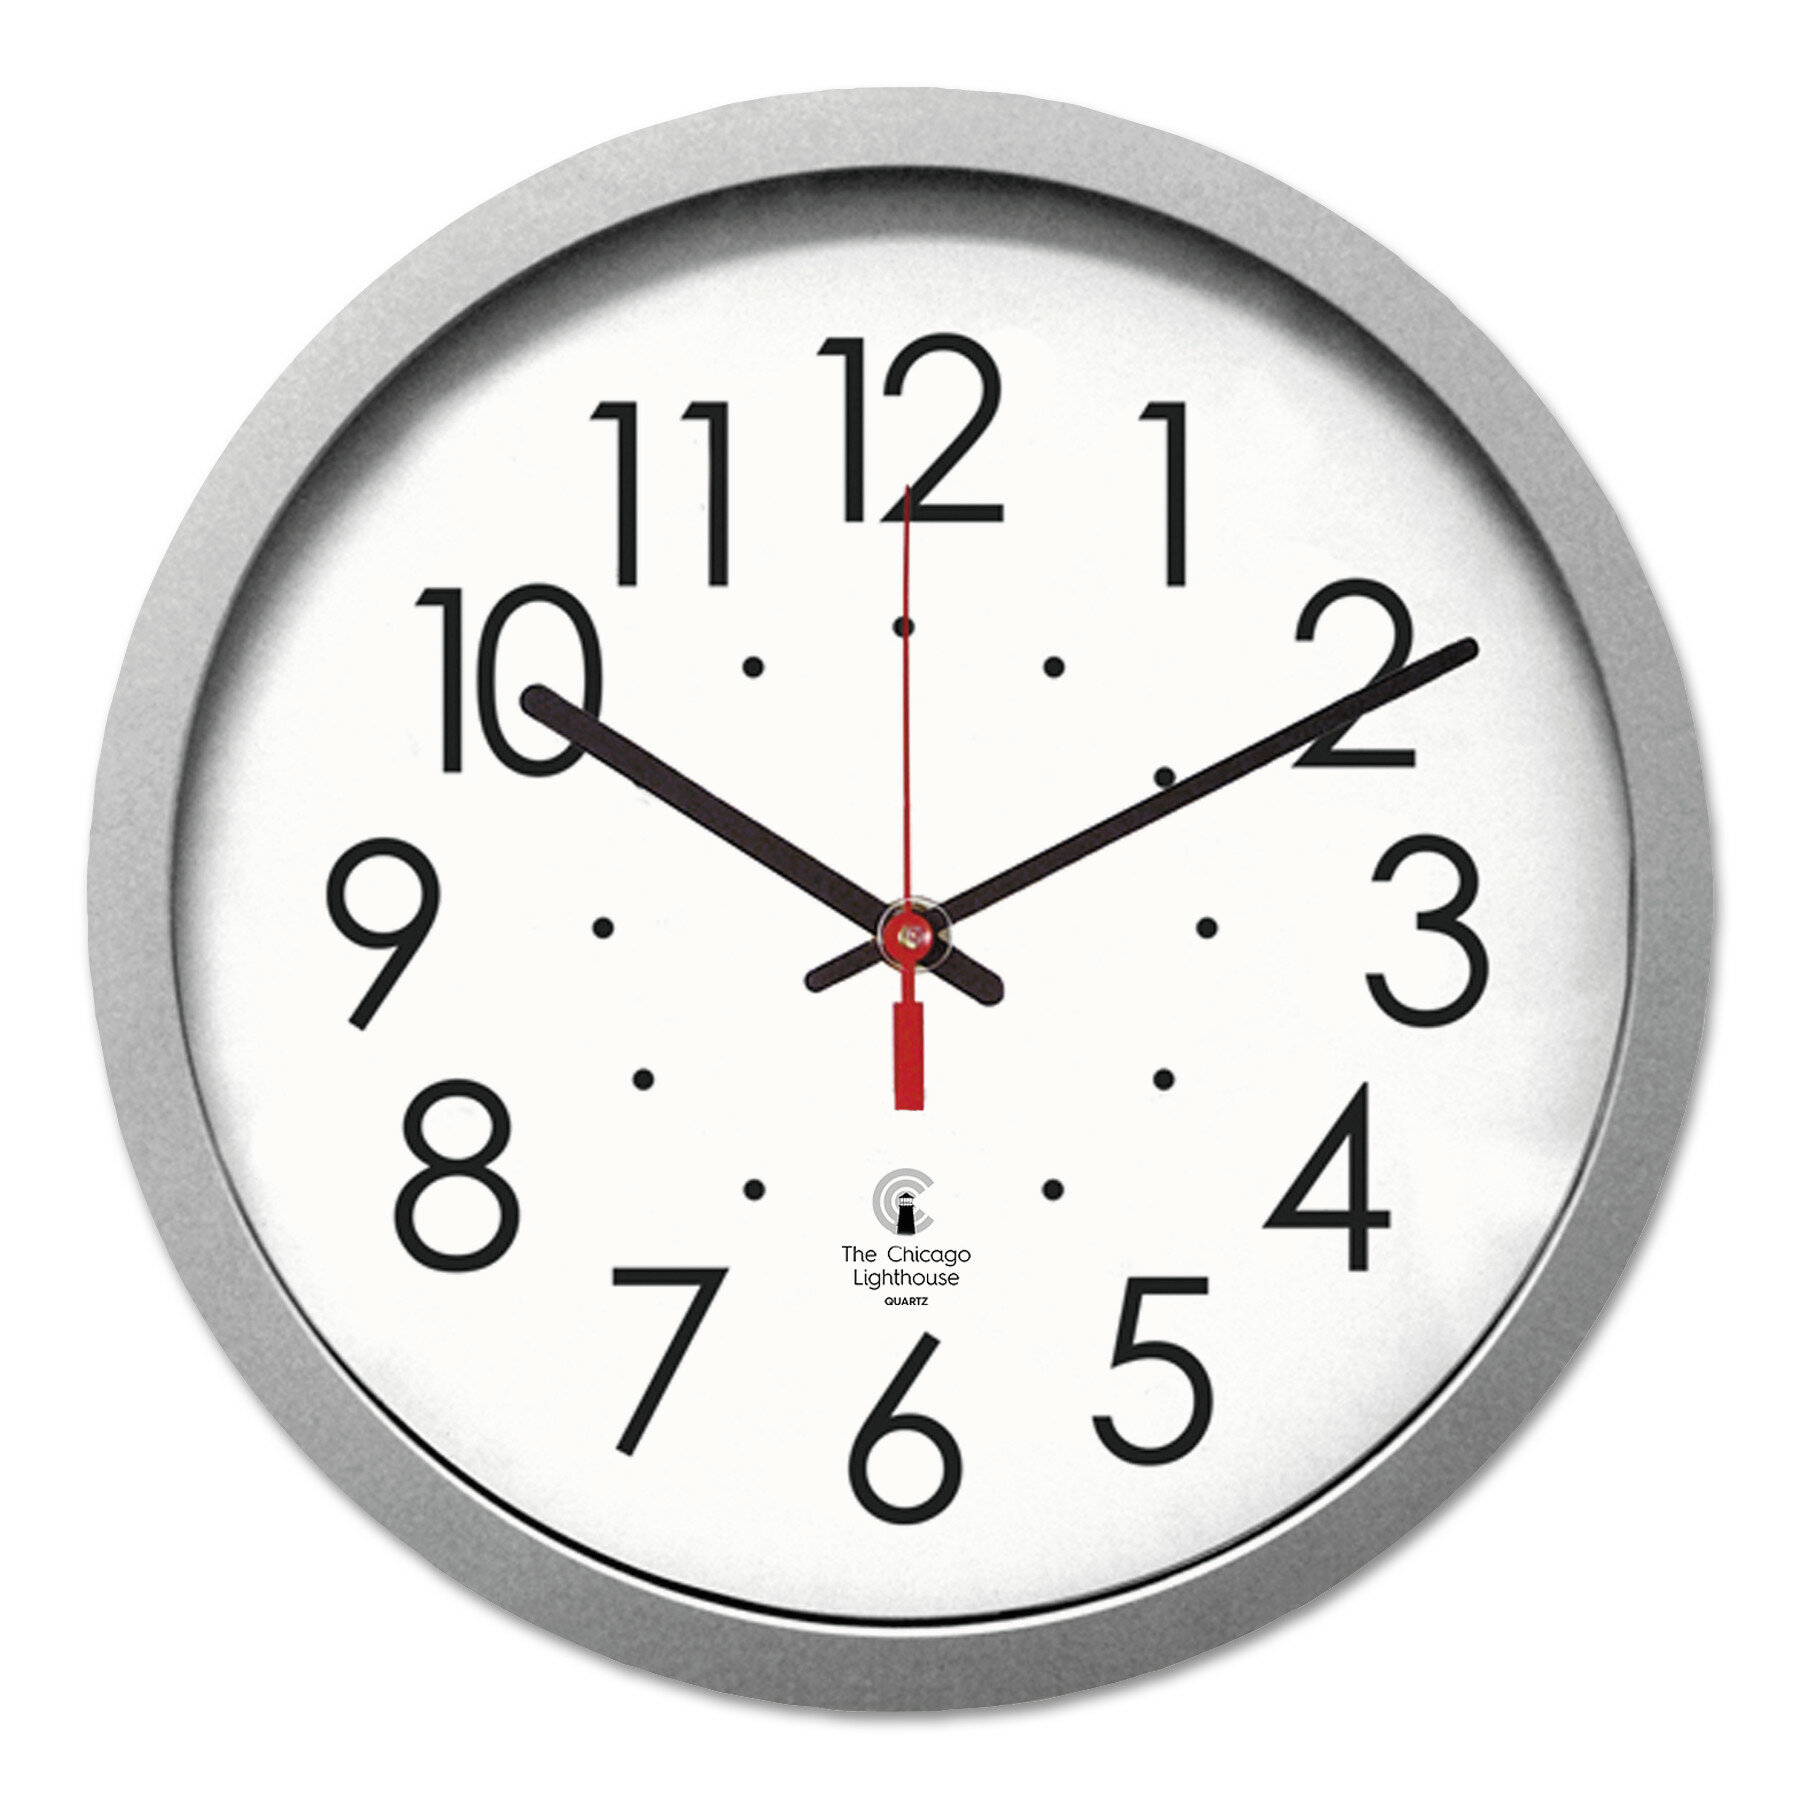 14 часов 26 минут. Часы Quartz настенные. 13:50 Часы. Часы 14. Часы 13 14.